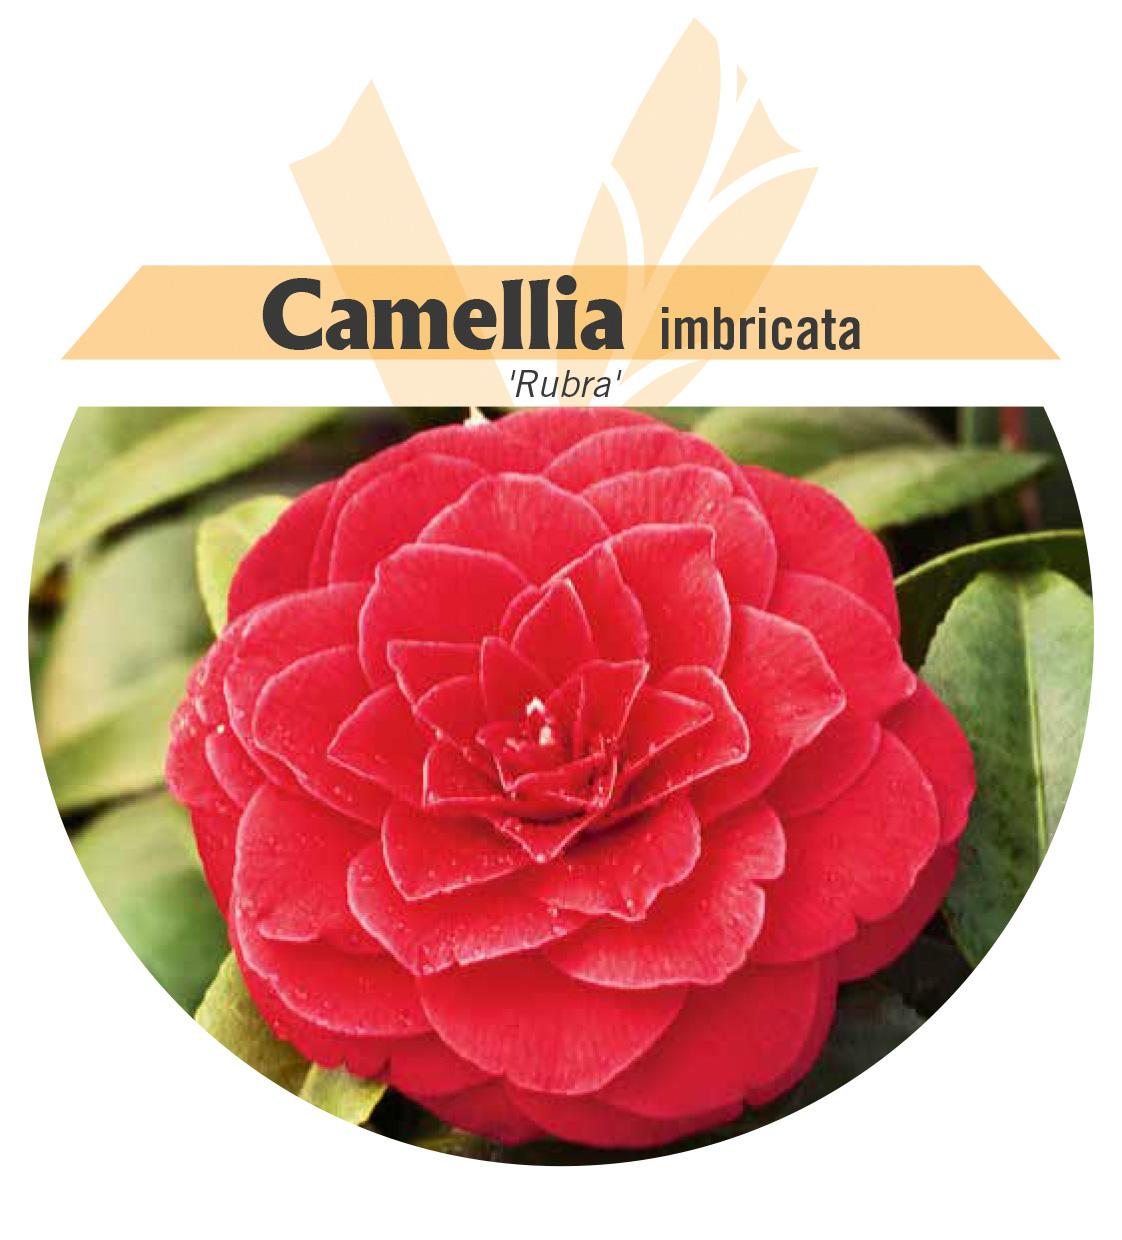 Camellia imbricata